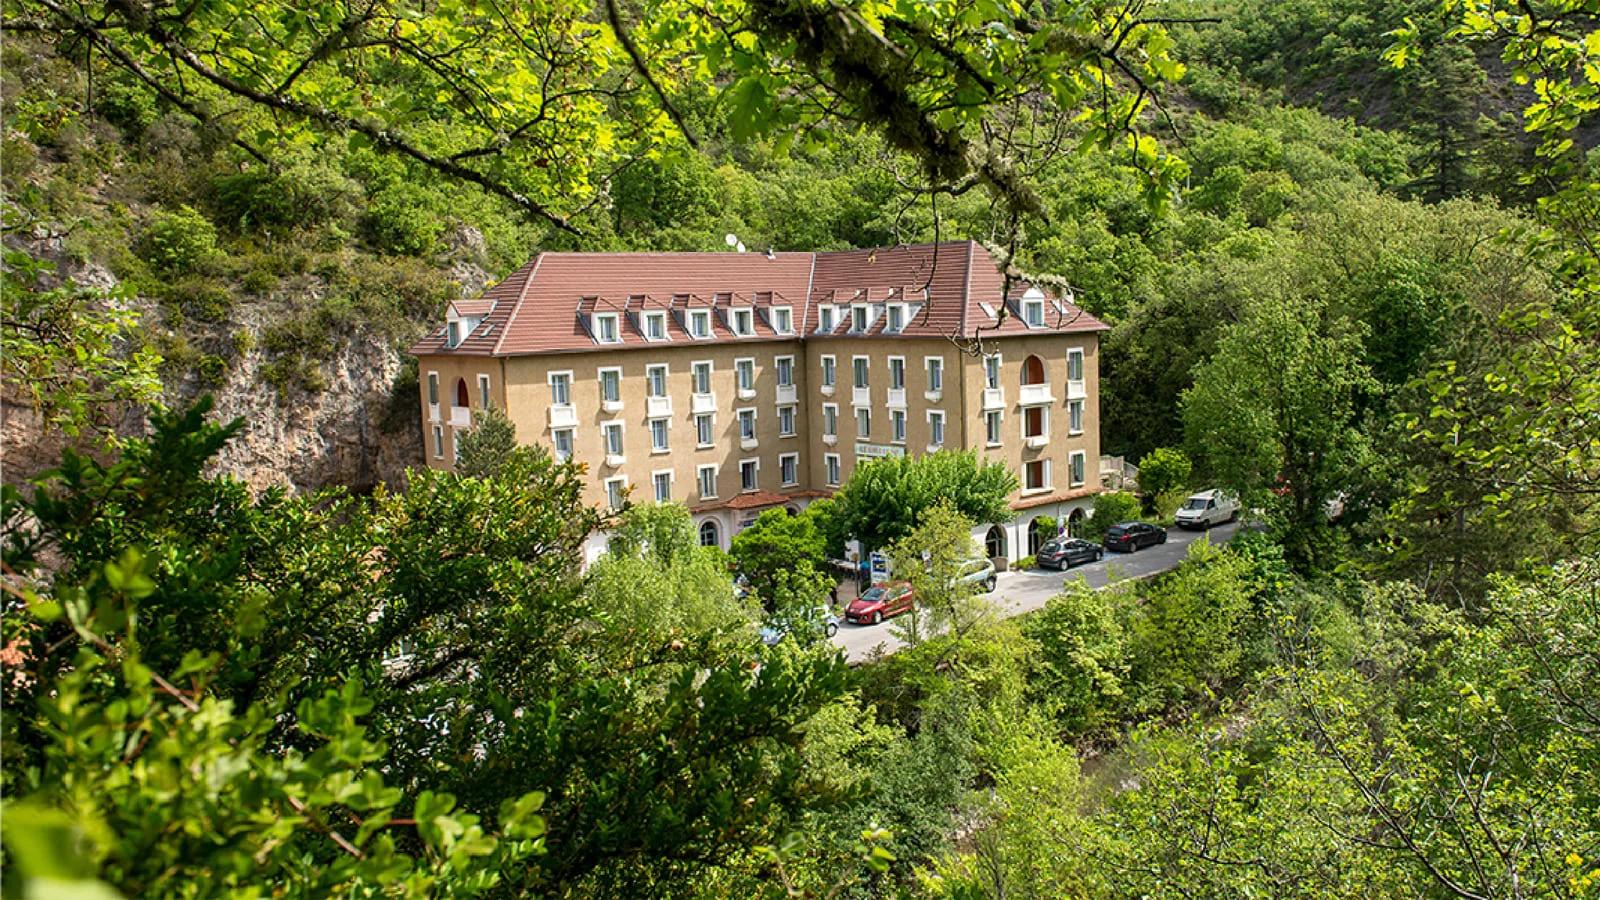 Hotel Le Richelme in the Vallon des Eaux Chaudes in Digne-les-Bains